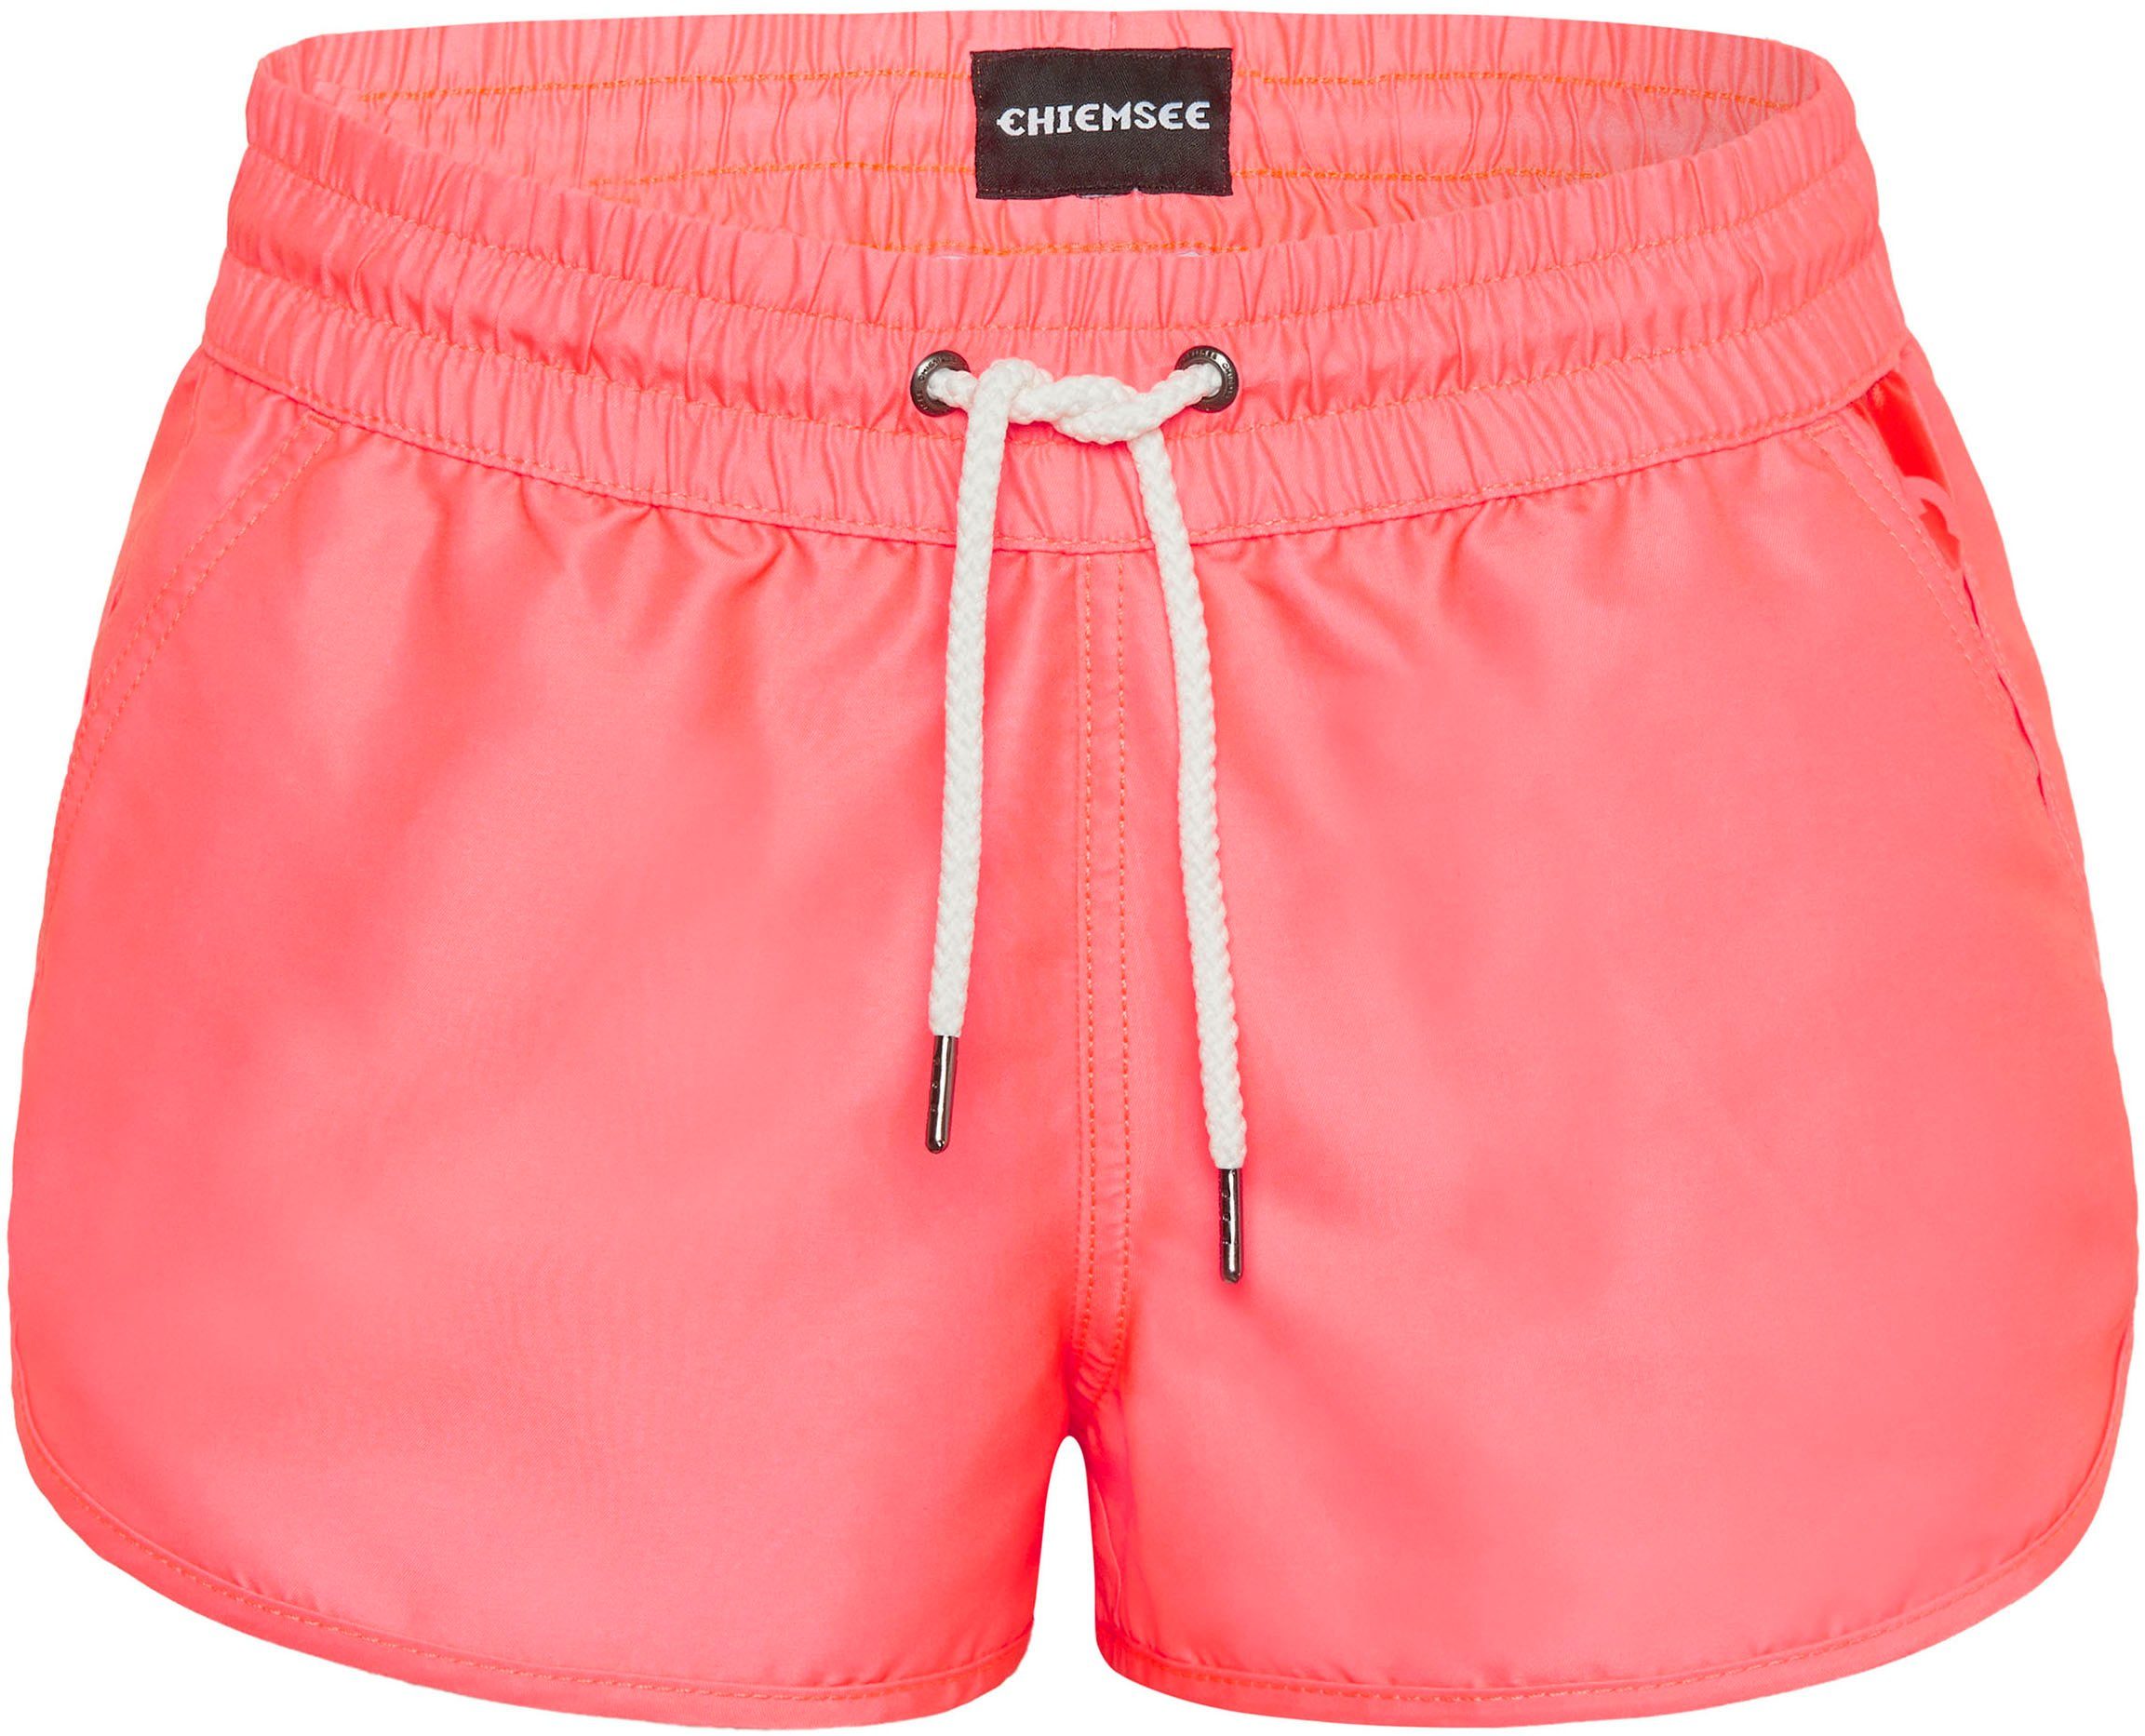 Chiemsee Badeshorts pink | Bikini-Hosen